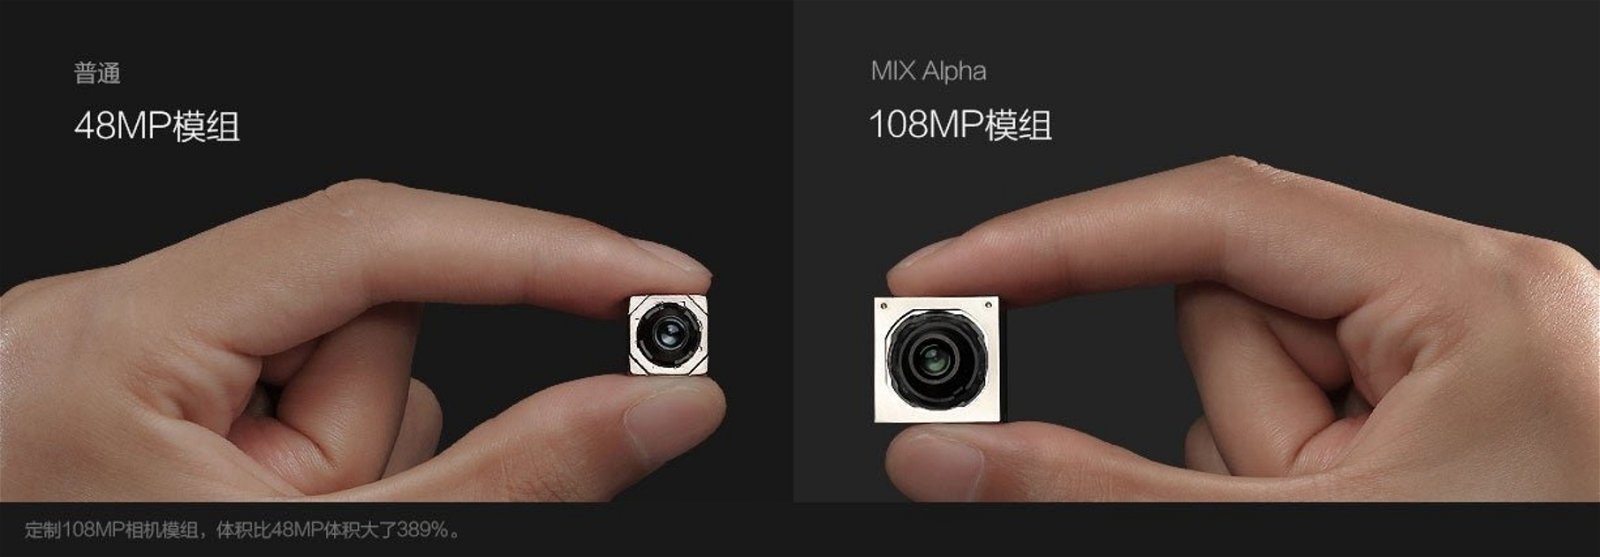 Xiaomi Mi MIX Alpha, sensor de camara